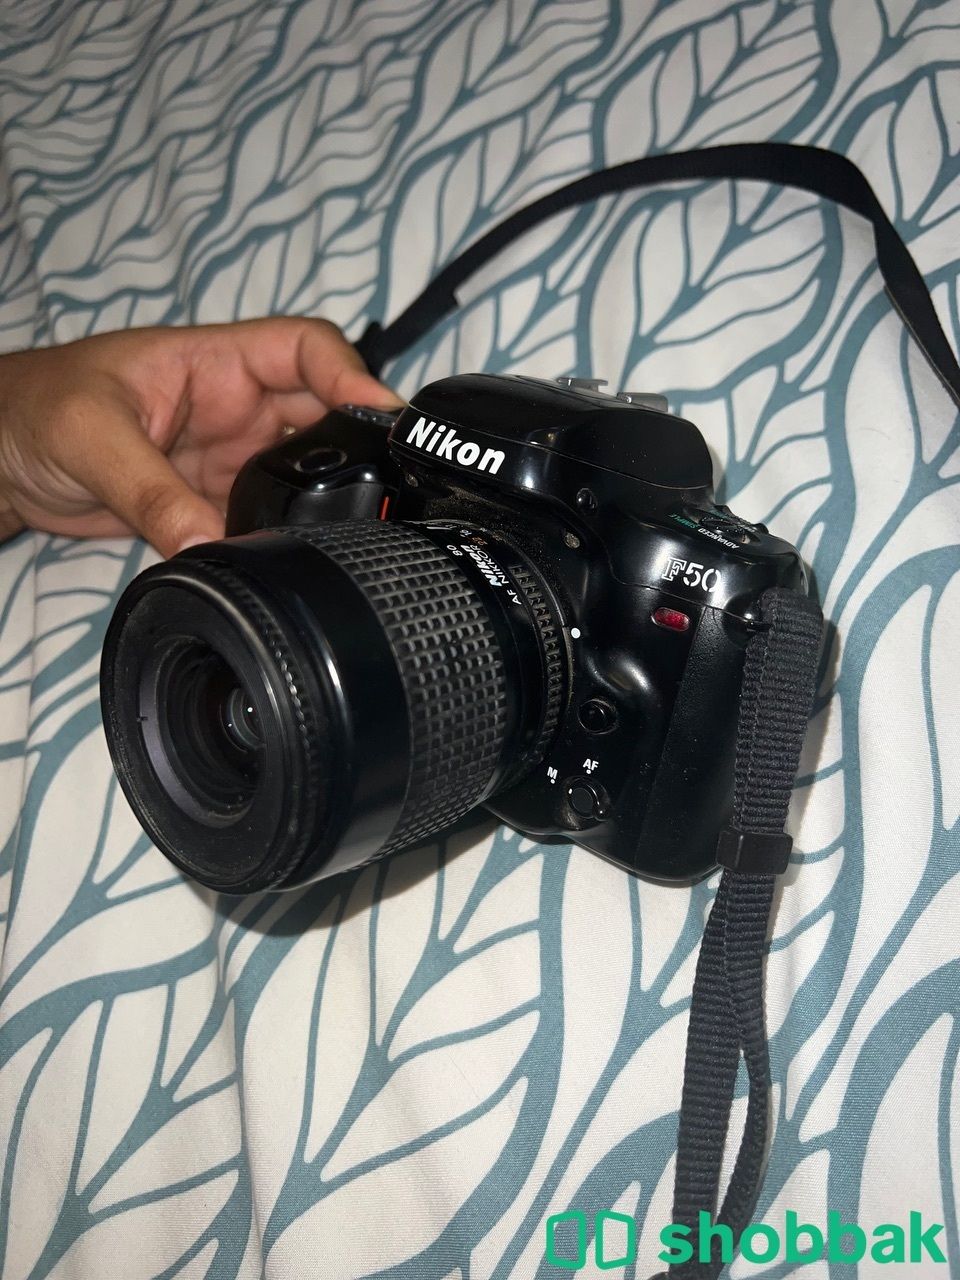 كاميرا احترافيه Nikon F50 للبيع Shobbak Saudi Arabia